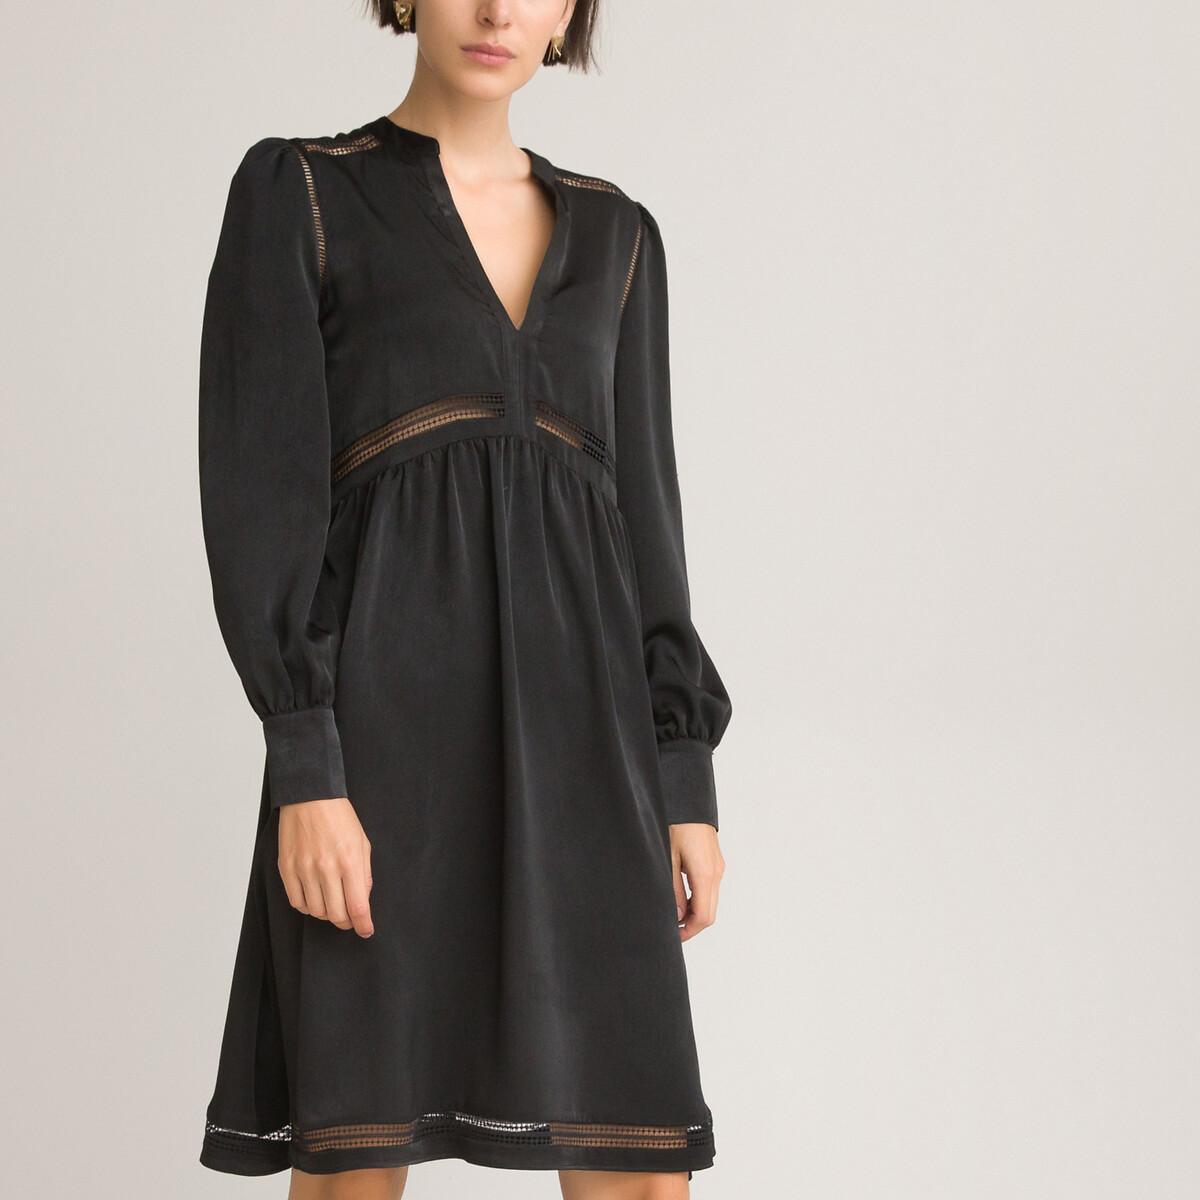 Платье короткое расклешенное с длинными рукавами 40 черный платье короткое расклешенное принт в горошек 40 черный